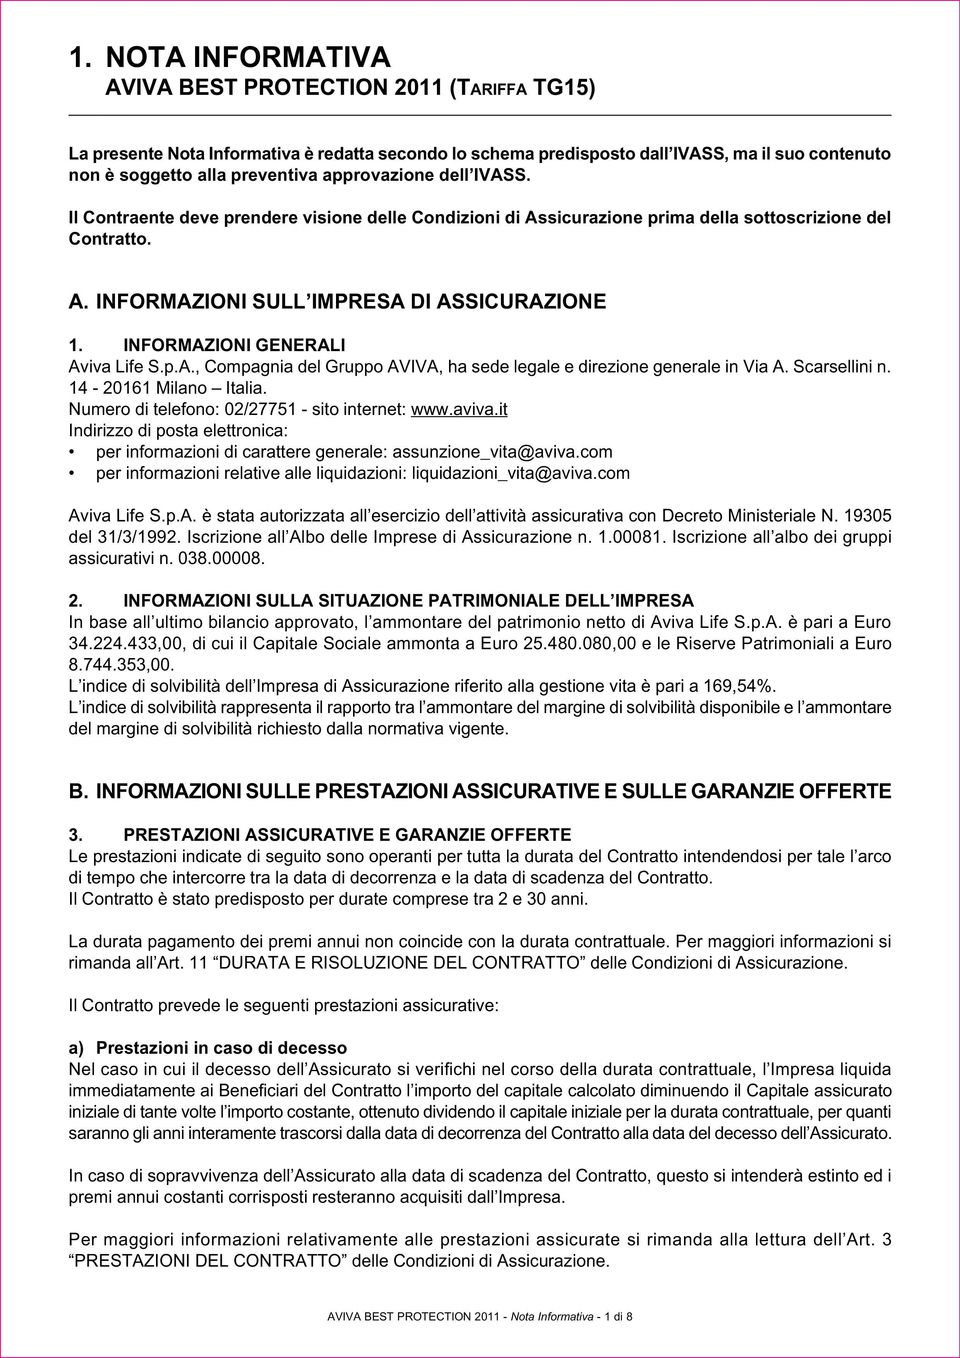 INFORMAZIONI GENERALI Aviva Life S.p.A., Compagnia del Gruppo AVIVA, ha sede legale e direzione generale in Via A. Scarsellini n. 14-20161 Milano Italia.